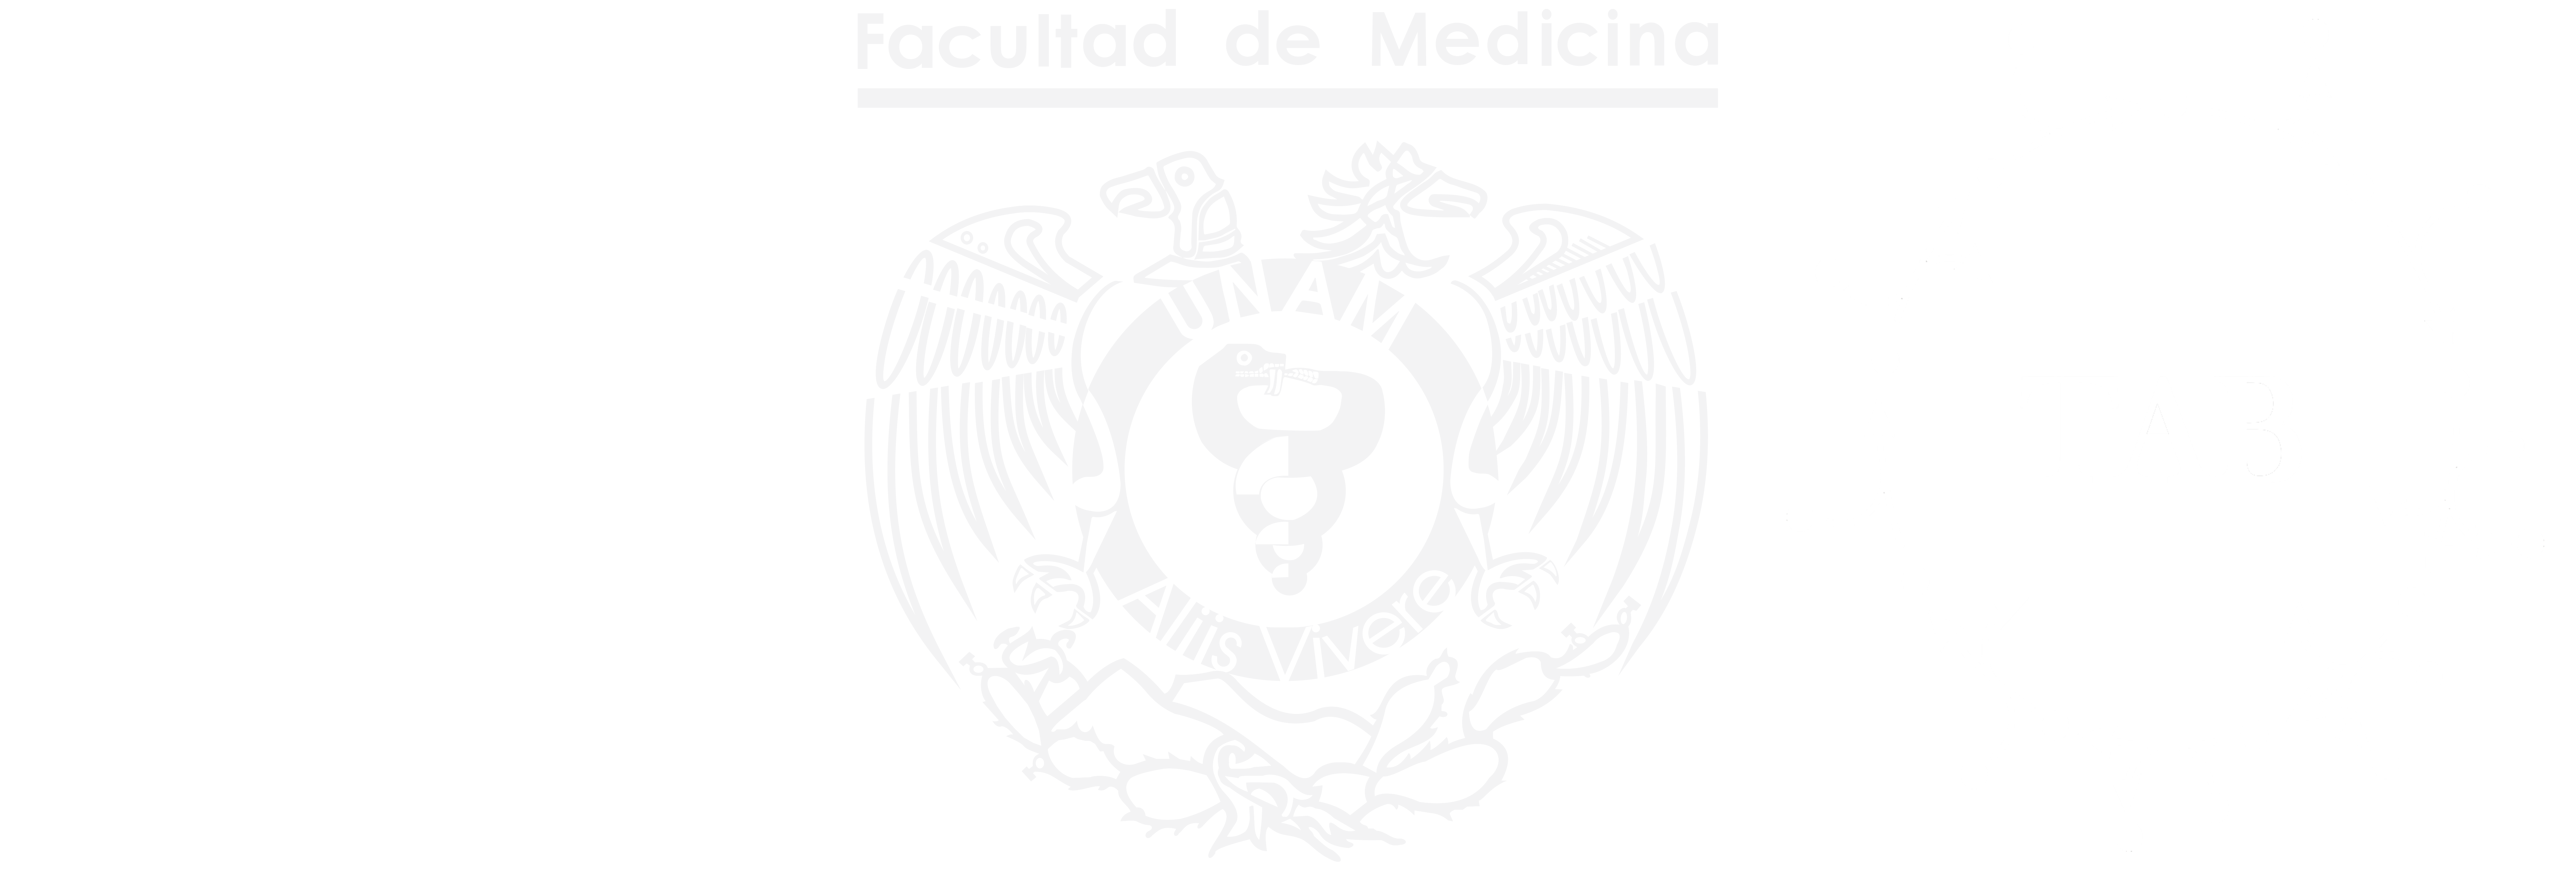 Taller de Actualización Bioquímica, Facultad de Medicina, UNAM